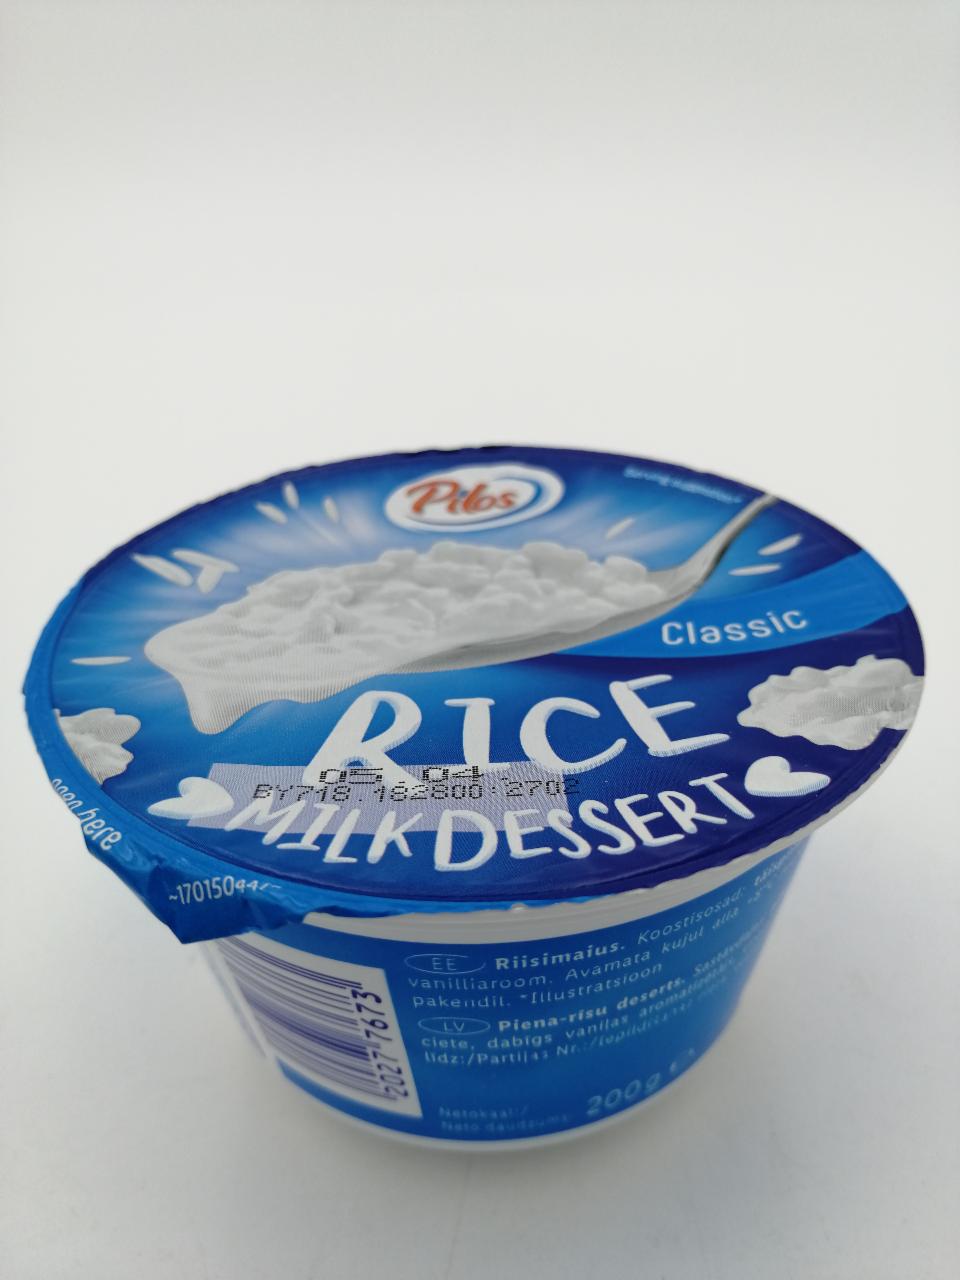 Fotografie - Rice Milk Dessert Classic Milbona